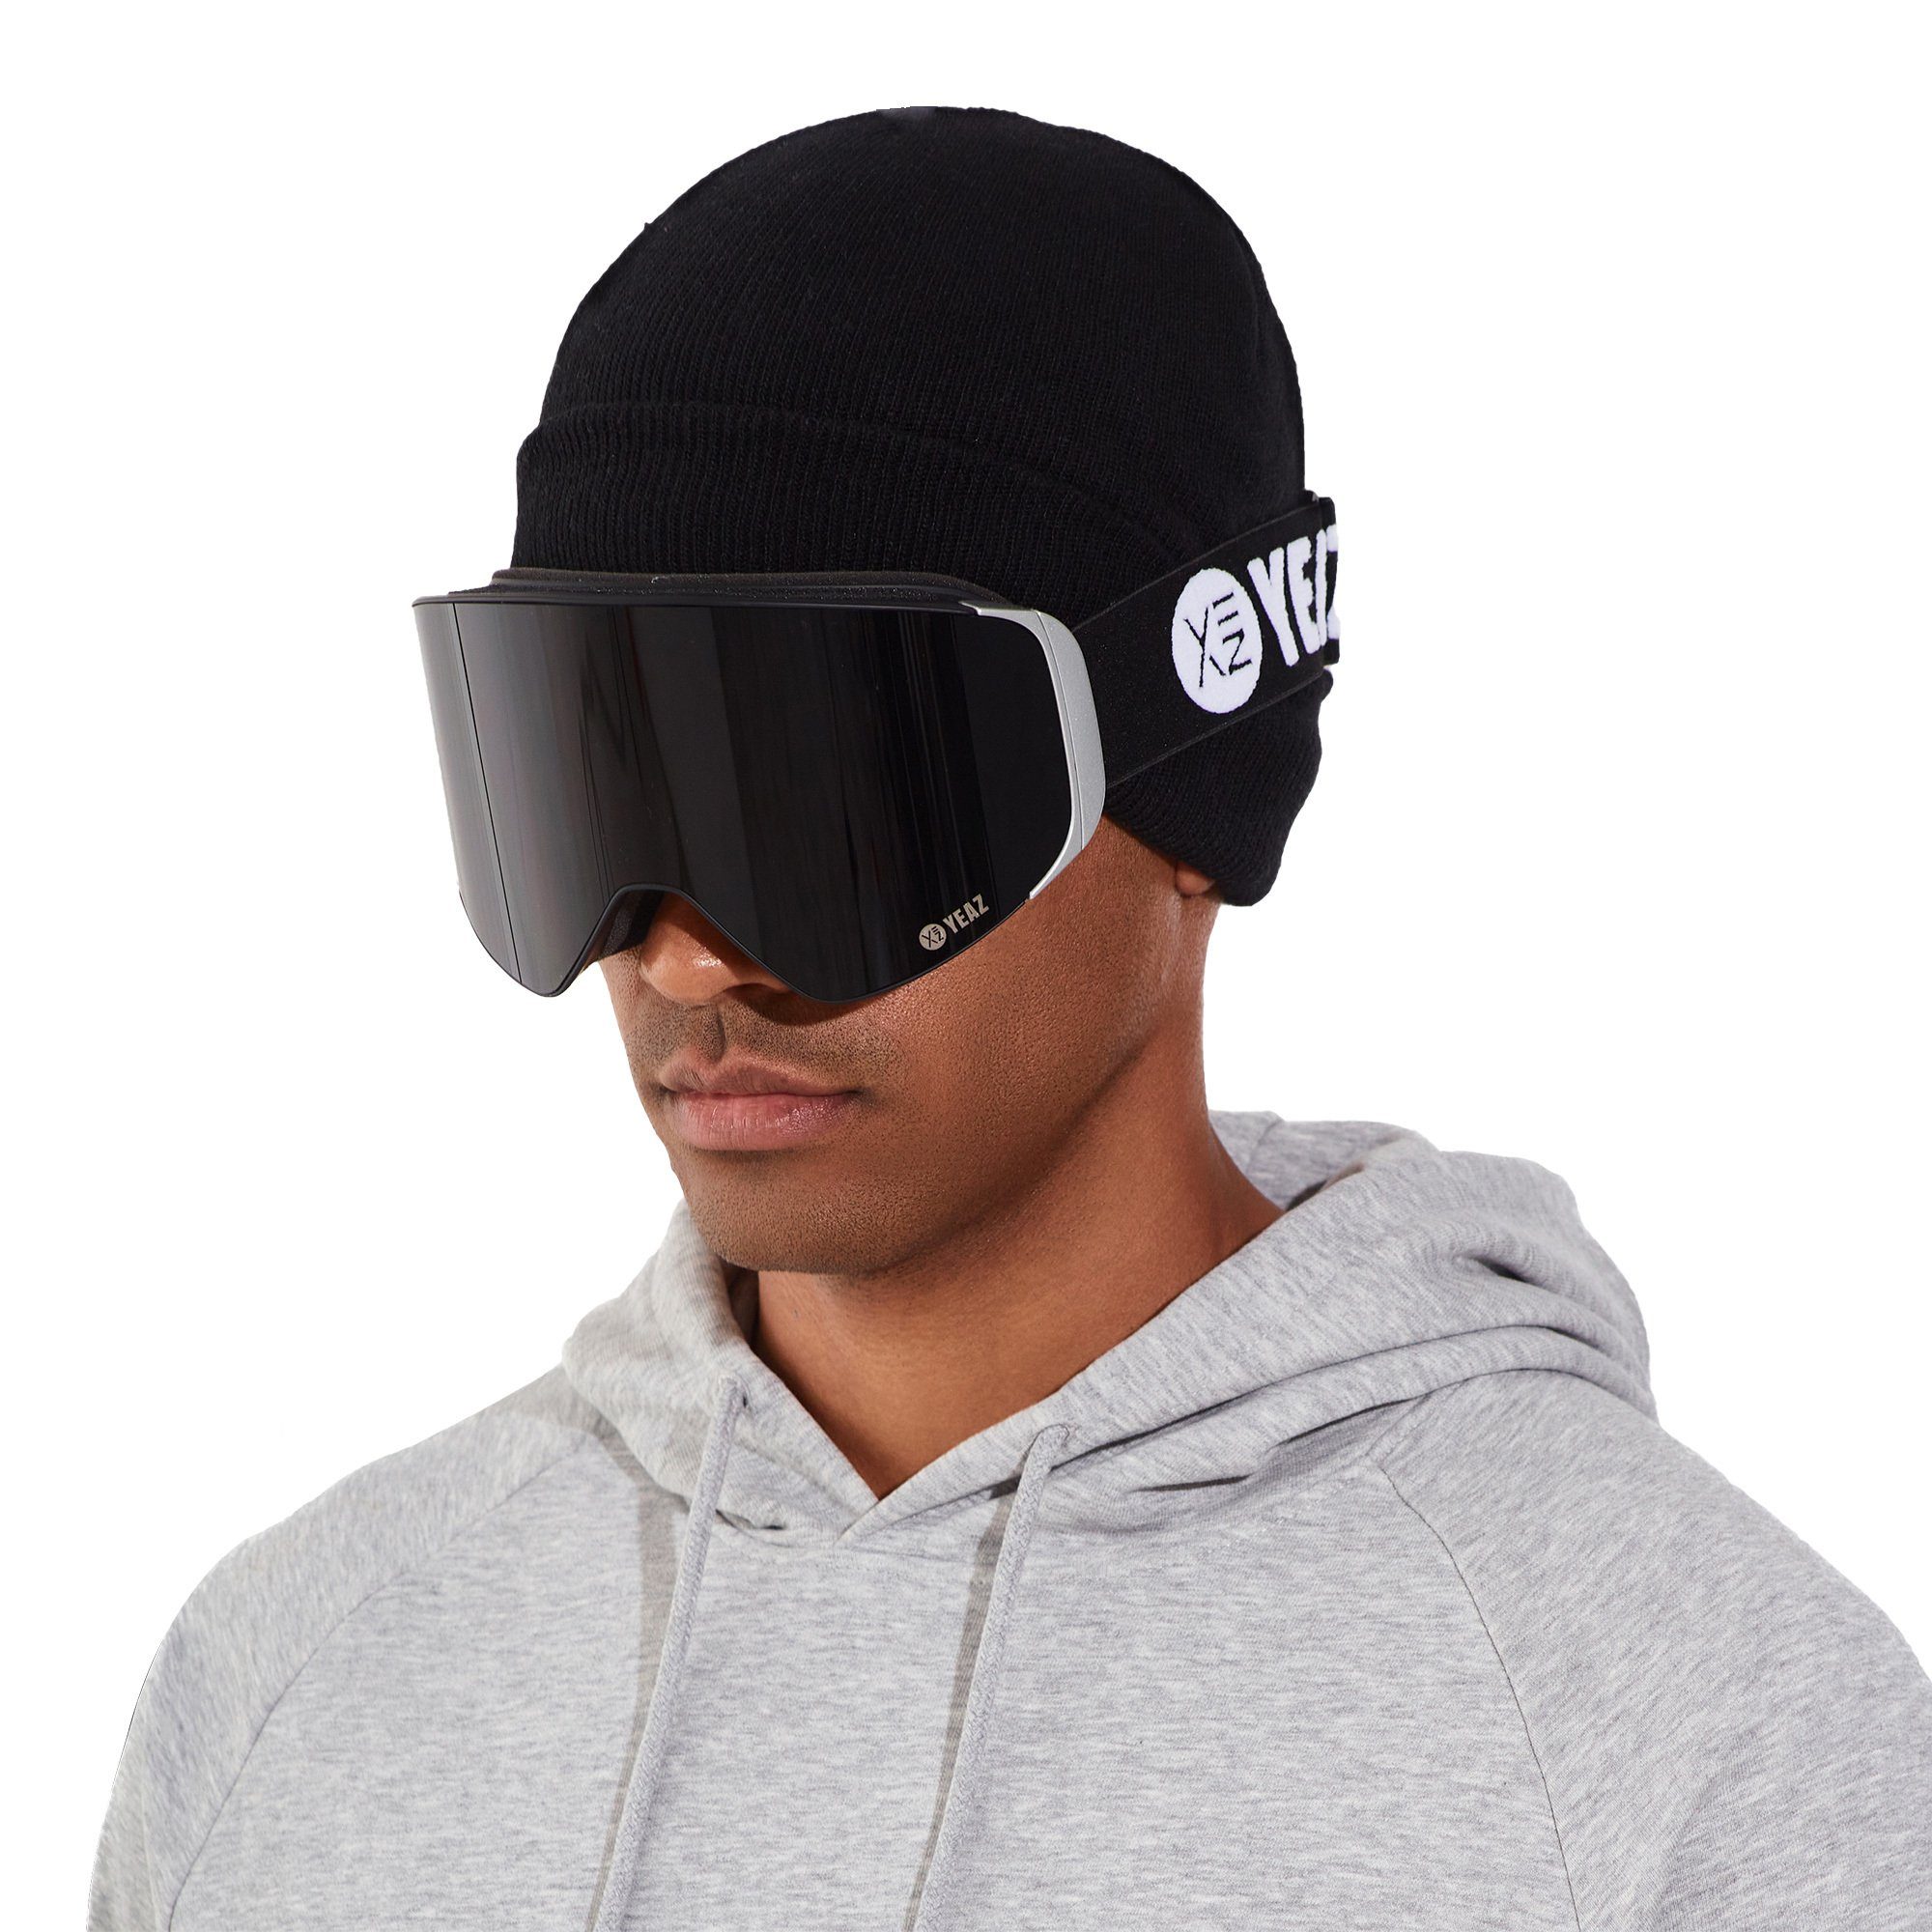 YEAZ schwarz/silber für schwarz/silber, magnet-ski-snowboardbrille Magnet-Wechsel-System Skibrille APEX Gläser,